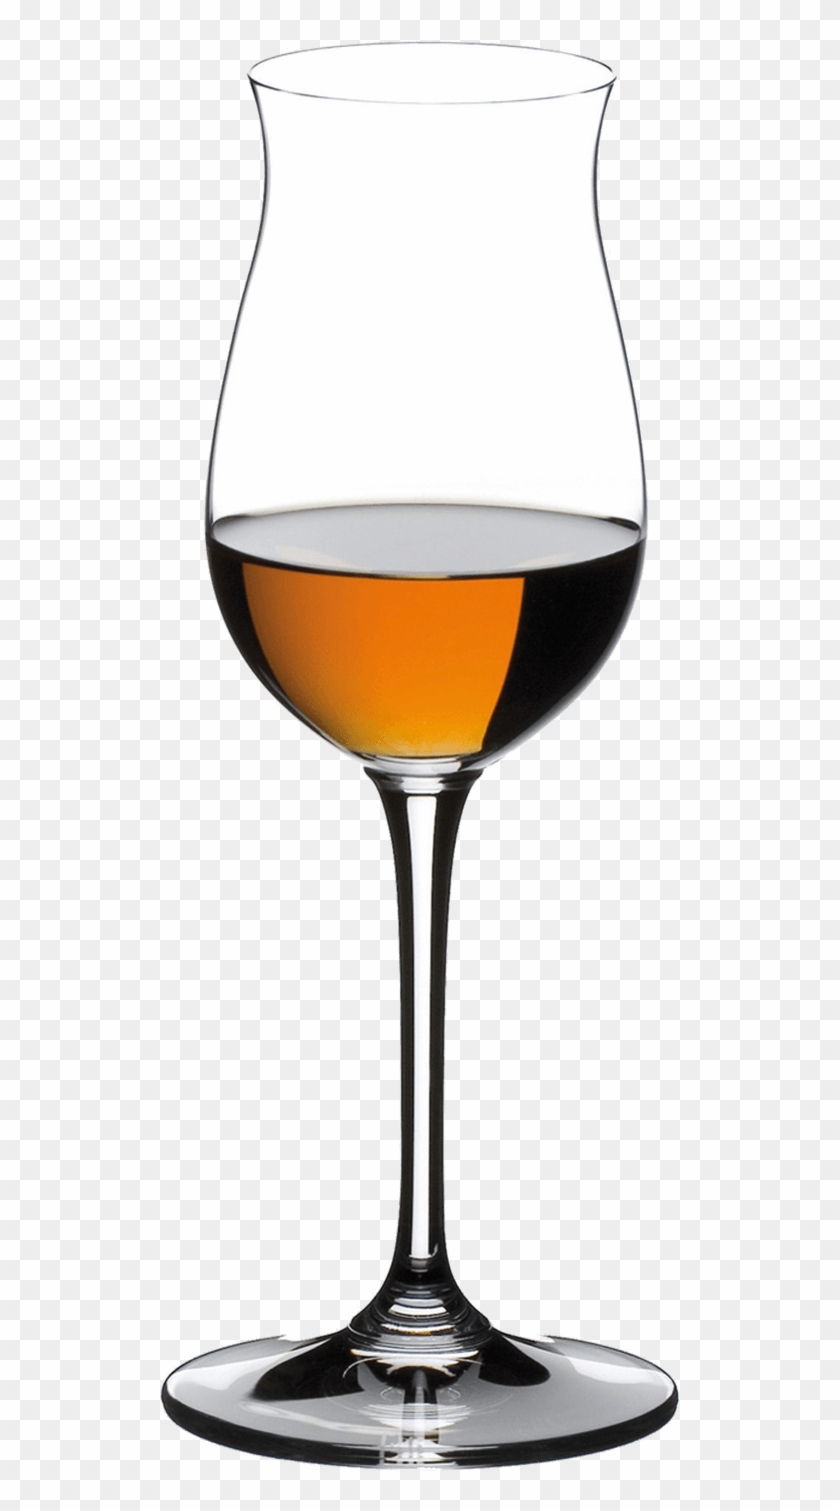 Riedel Glas 6416/71 - Riedel Vinum Cognac Vsop Clipart #3836832